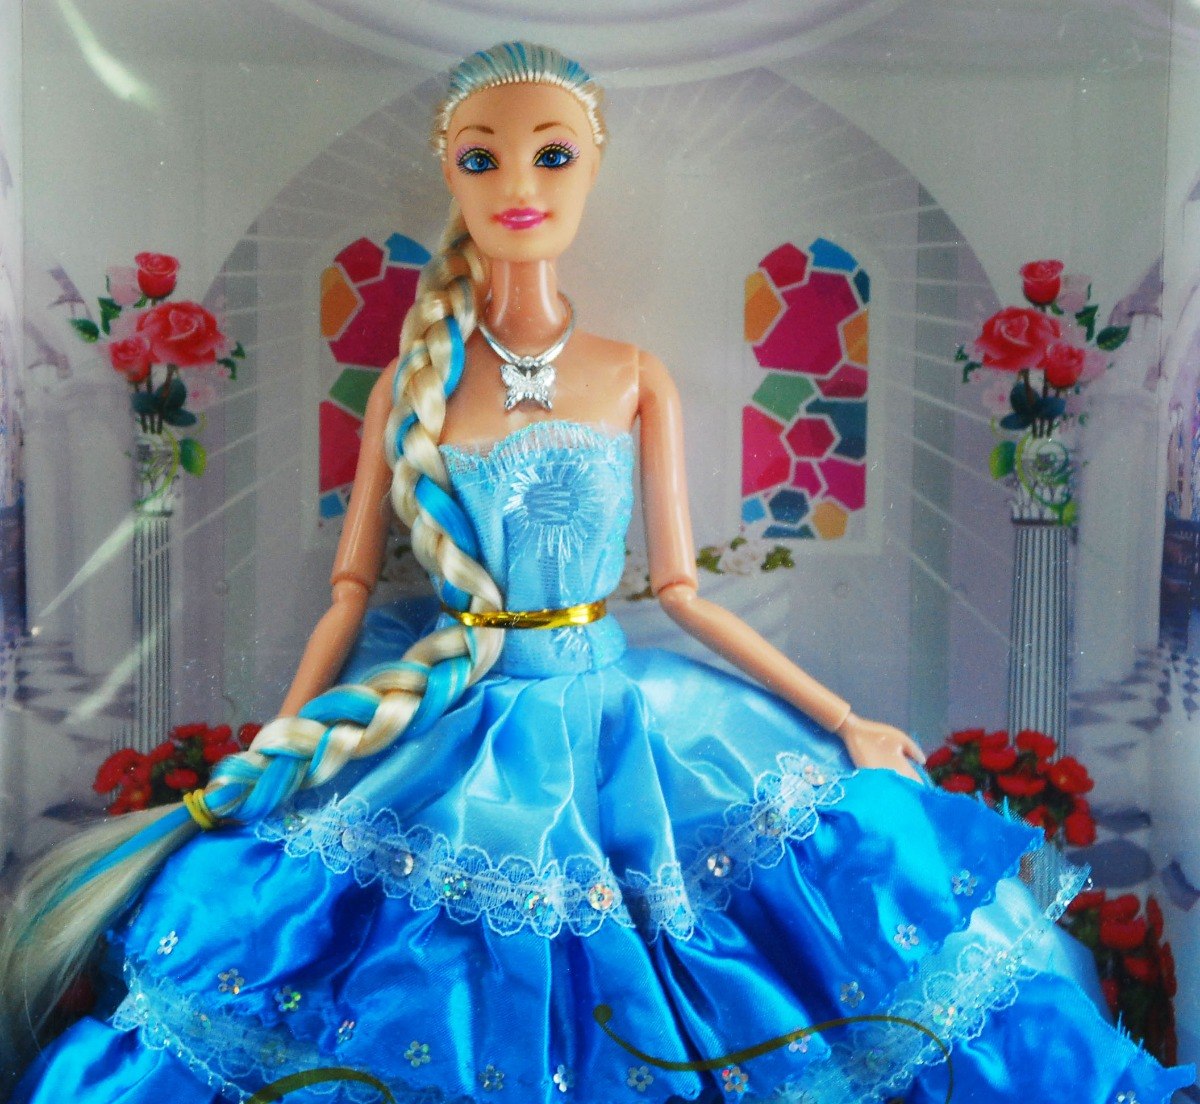 barbie-novia-cabello-largo-vestido-azul-juguete-ninas-nuevo-D_NQ_NP_659262-MLV28449978670_102018-F.jpg